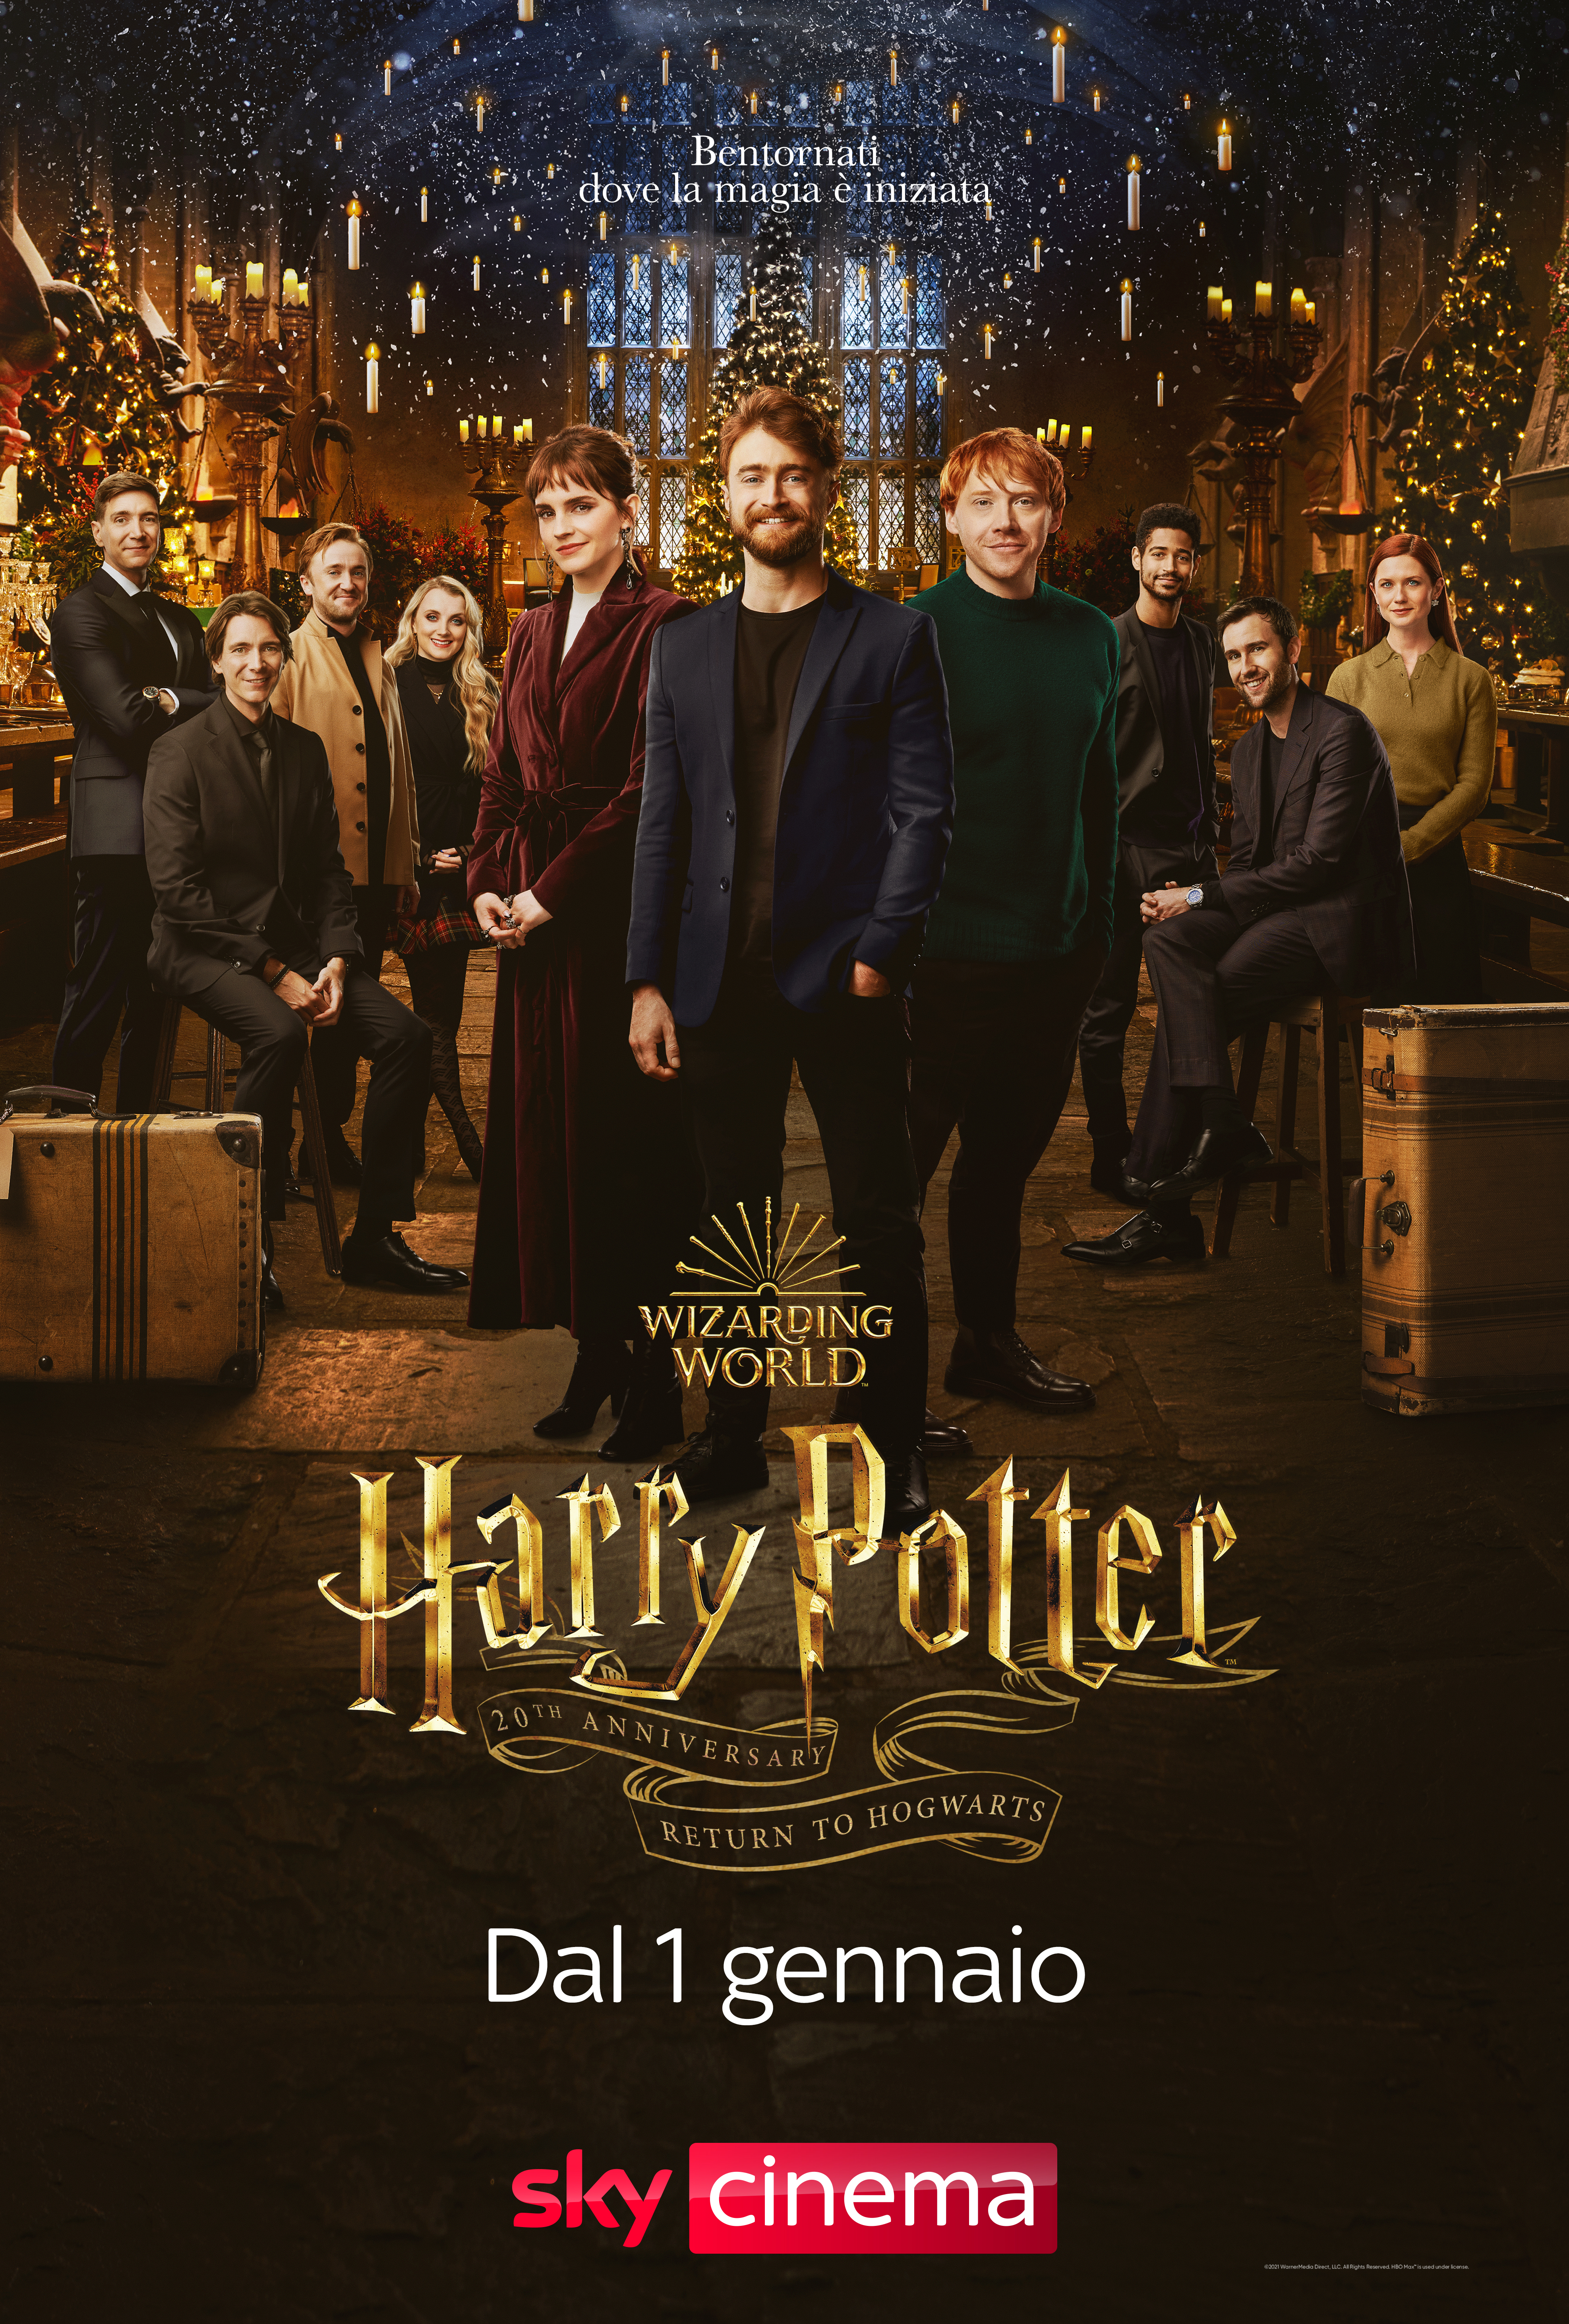 I componenti del casr di Harry Potter si ritrovano per il 20th Anniversary - nerdface